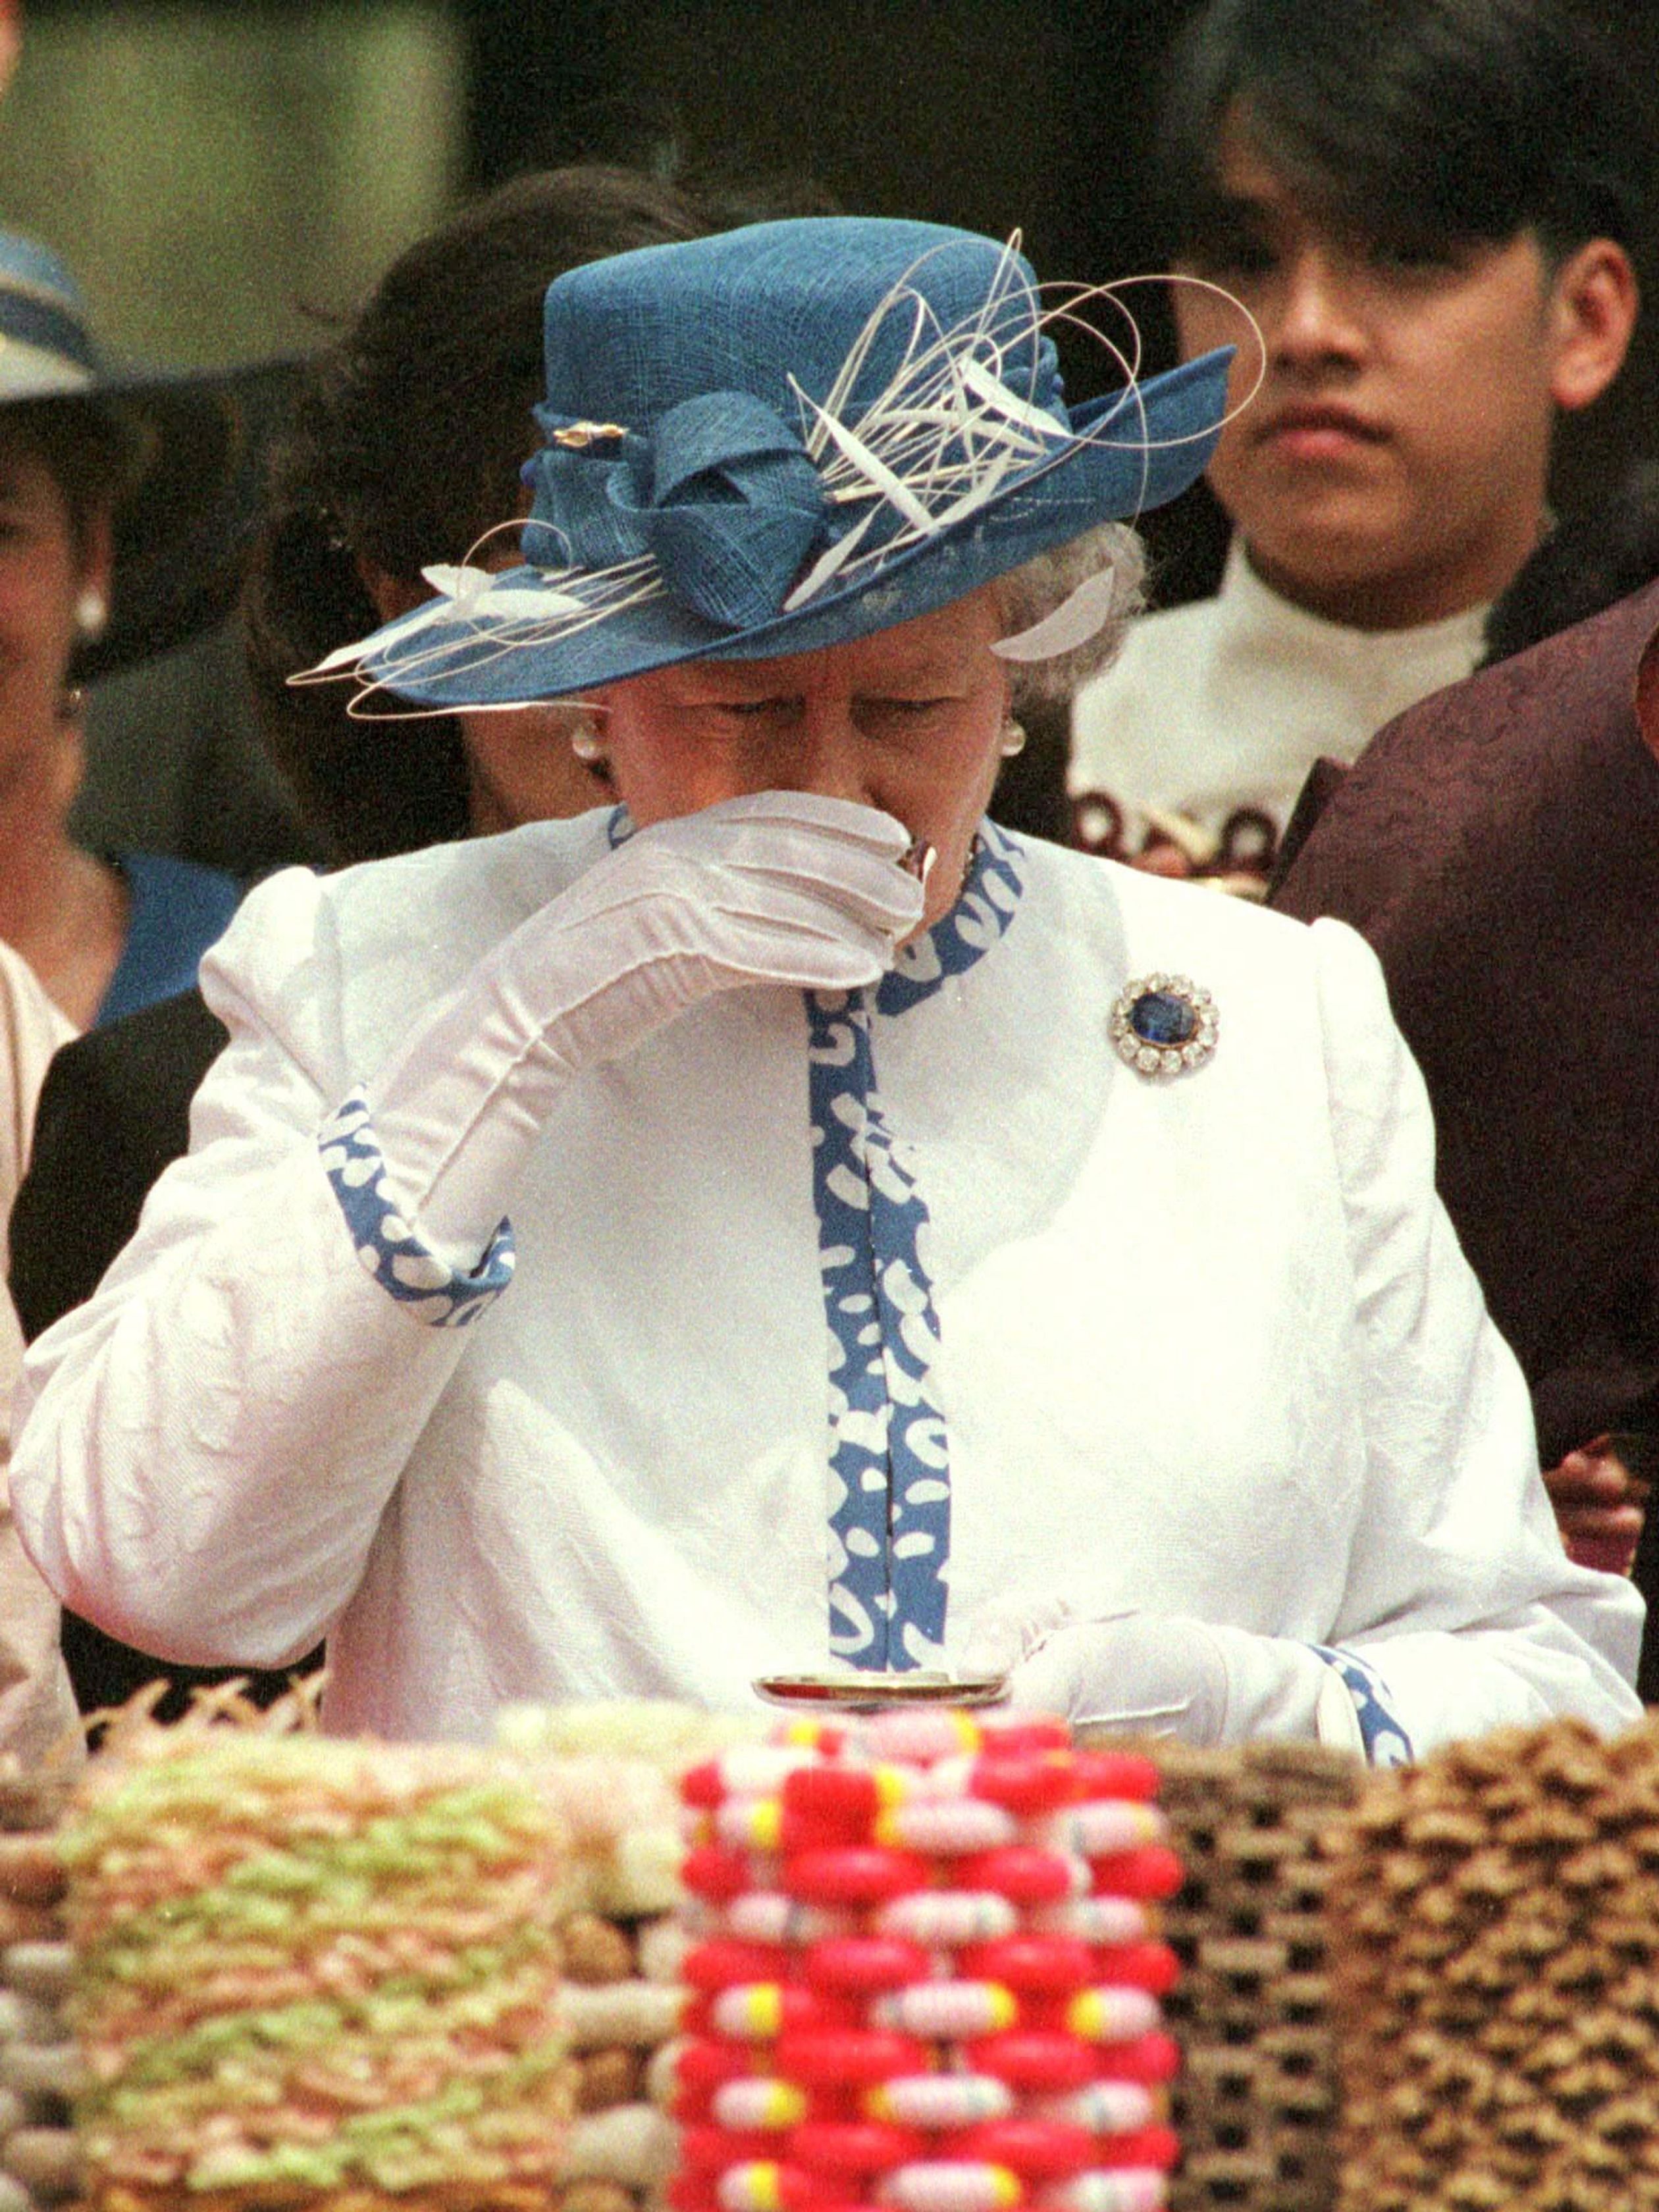 Rijst is niet alleen voor het eten. In 1999, tijdens een bezoek aan Zuid-Korea, slokt koningin Elizabeth een rijstwijn op.